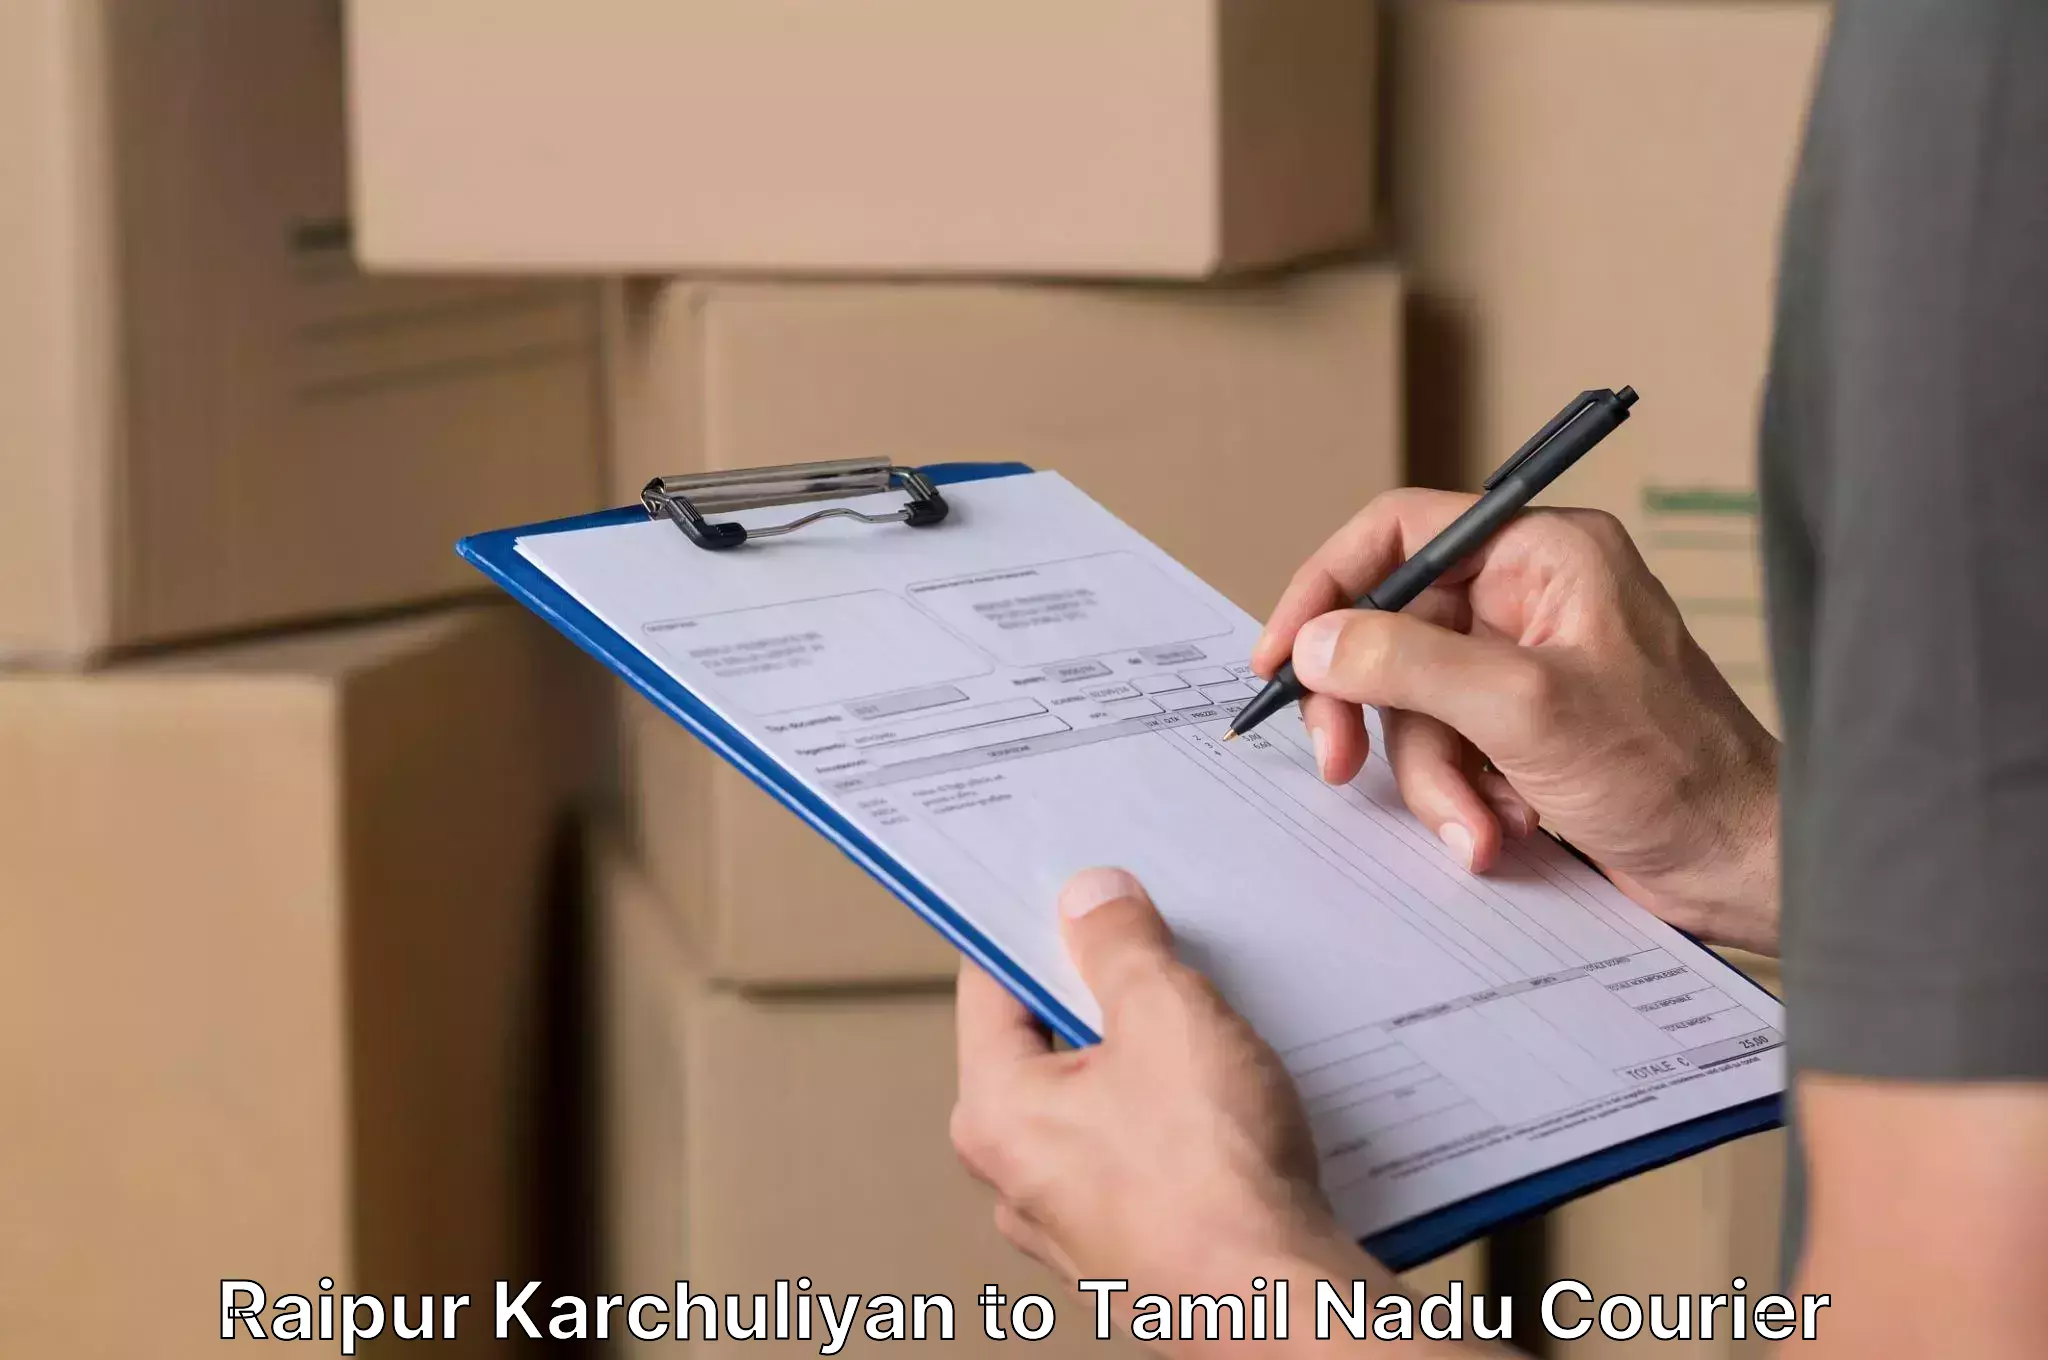 Personalized moving service Raipur Karchuliyan to Perambalur